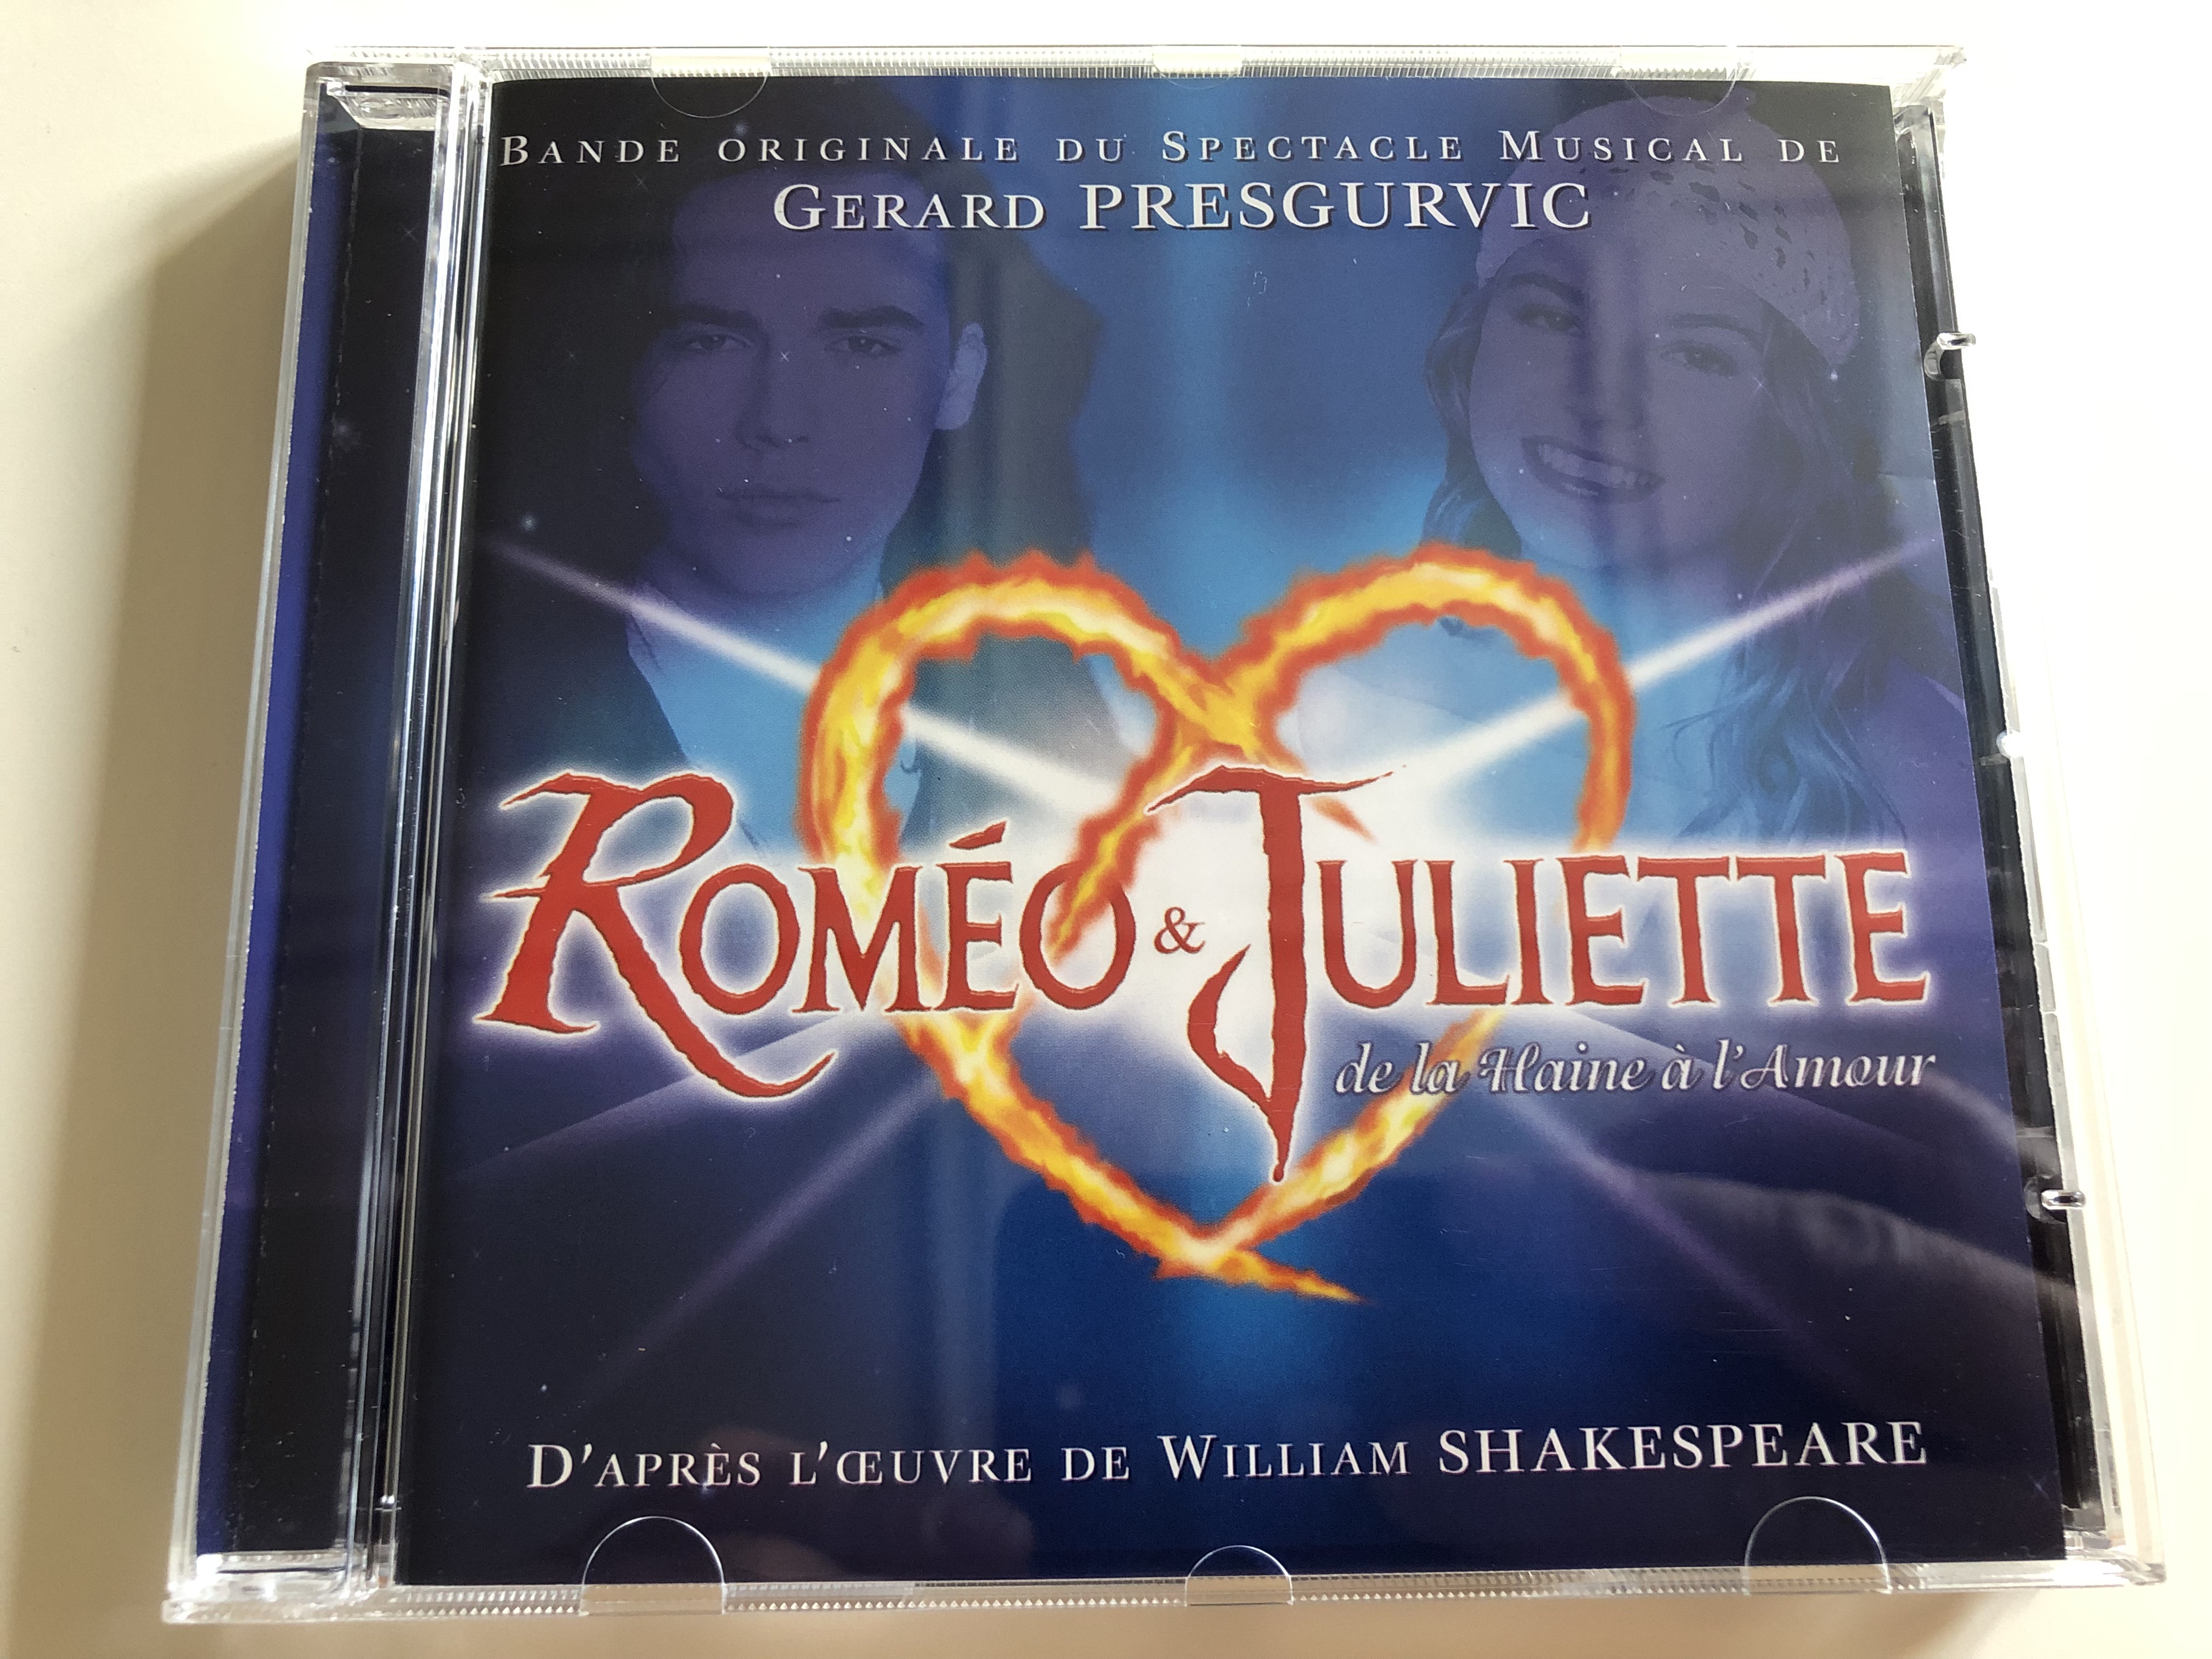 Roméo & Juliette De La Haine À L'Amour / Audio CD 2000 / Romeo & Juliet  From Hatred to Love / Bande originale du Spectacle Musical de Gerard  Presgurvic / D'aprés L'ceuvre